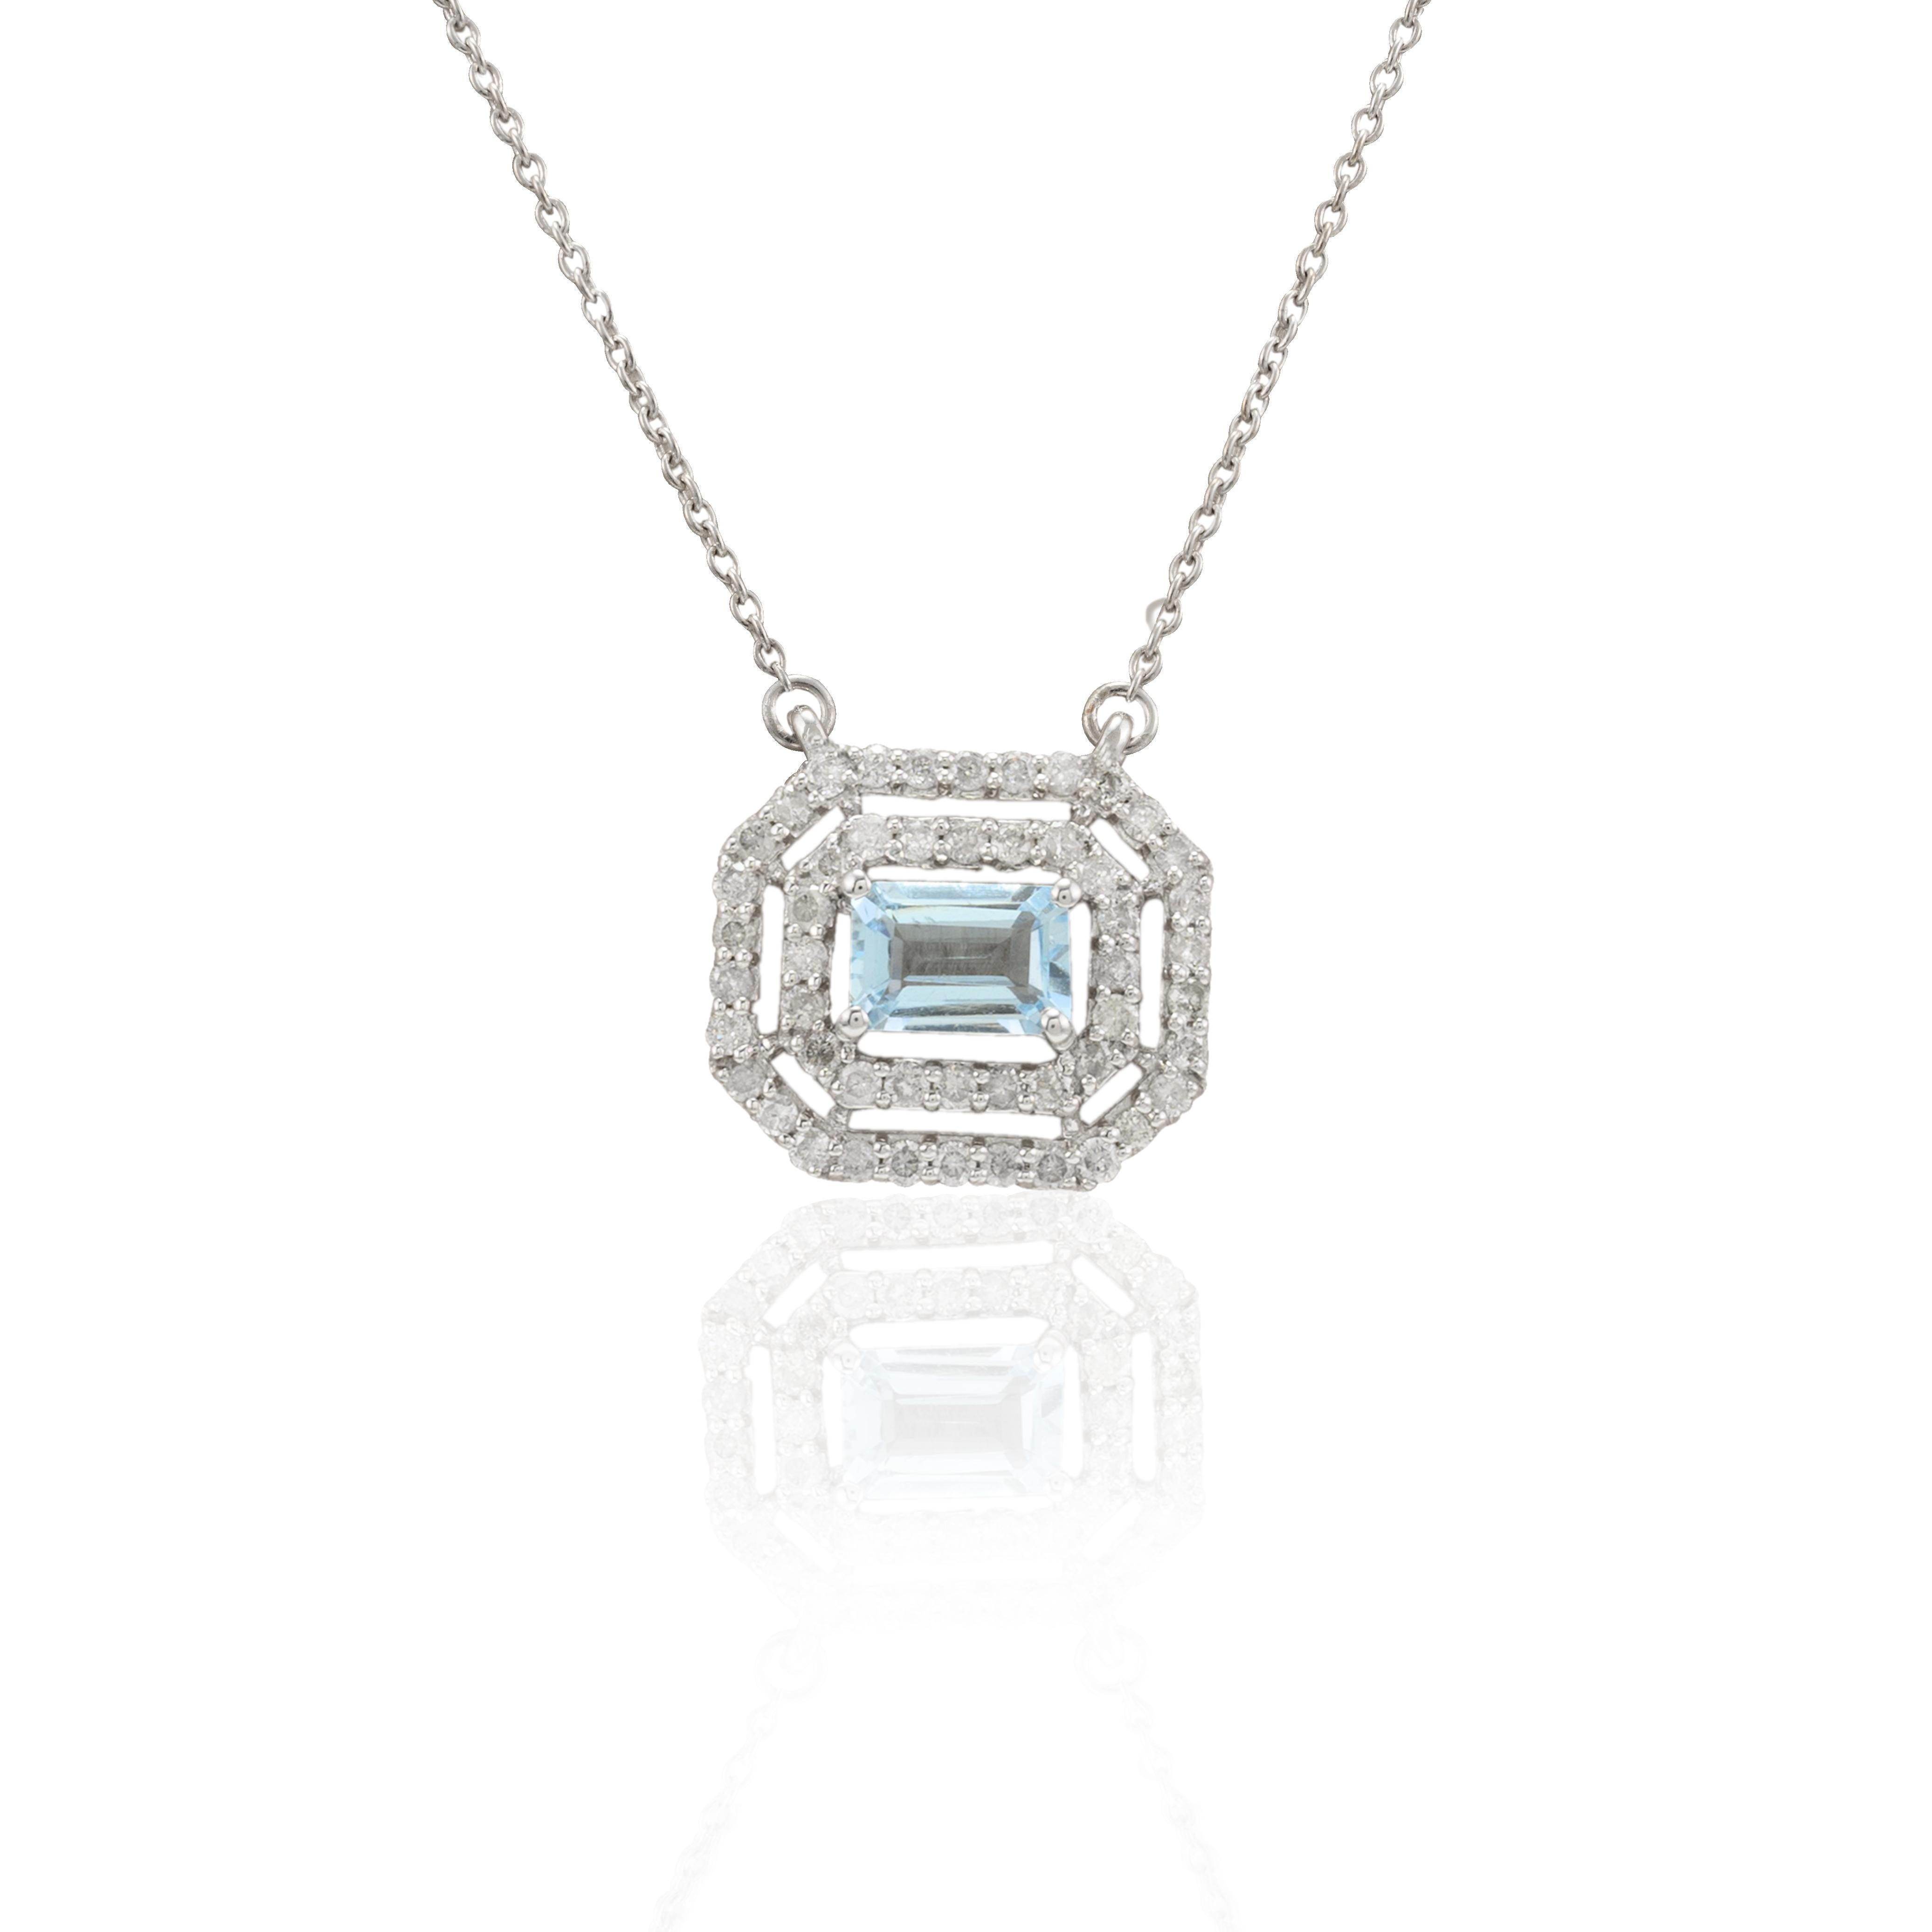 Collier de chaîne en or 14 carats serti de diamants de taille octogonale en forme de halo d'aigue-marine. Ce superbe bijou rehausse instantanément un look décontracté ou une tenue habillée. 
L'aigue-marine est utile pour traverser les périodes de